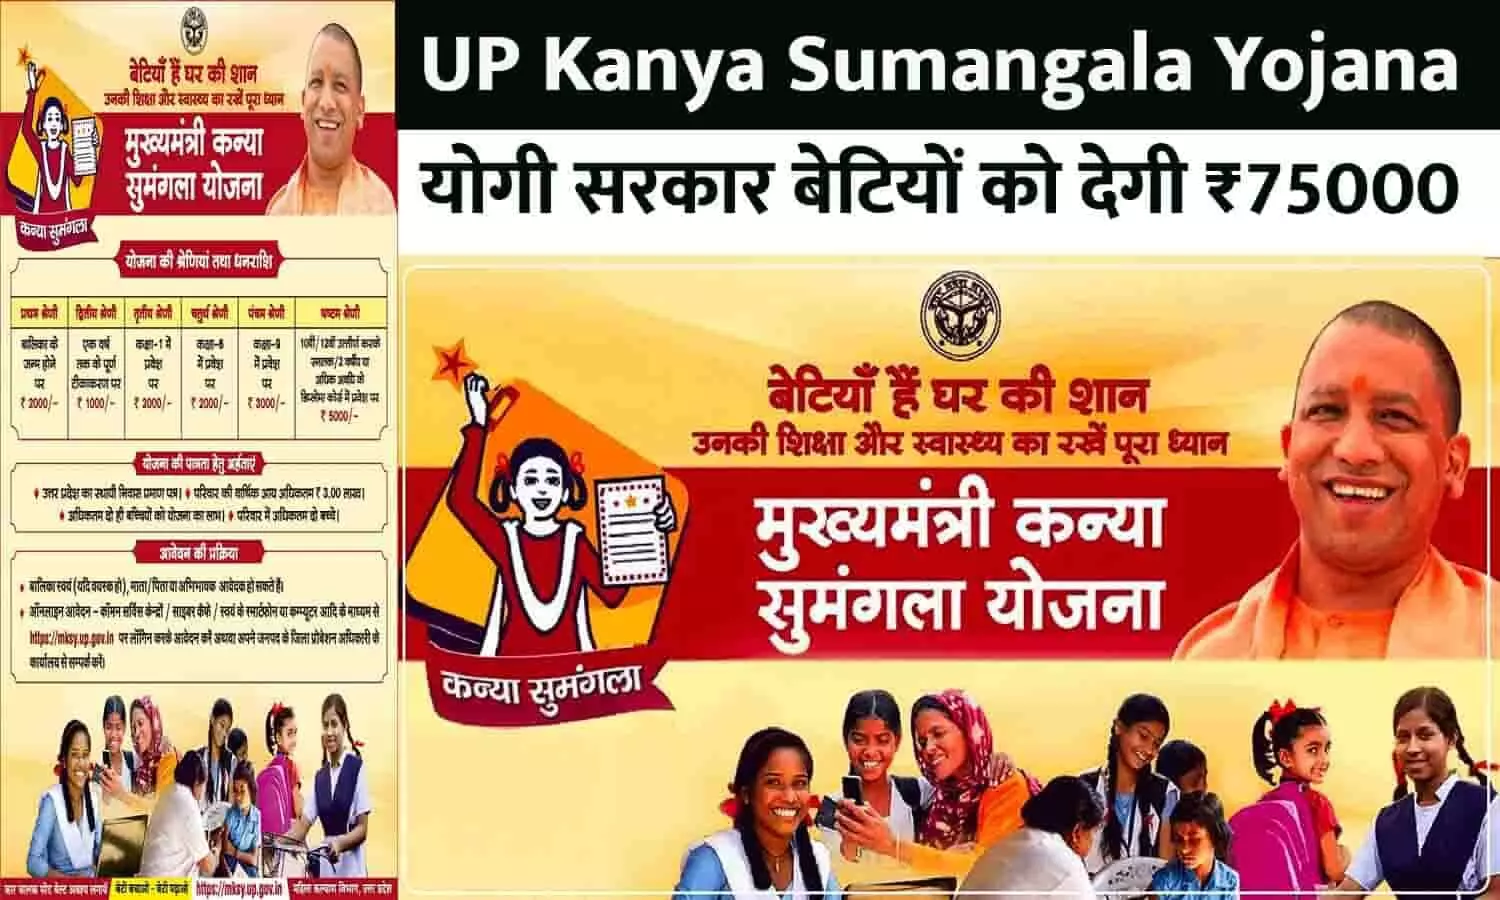 UP Kanya Sumangala Yojana Big Alert : योगी सरकार बेटियों को देगी ₹75000, फटाफट जानें कैसे?